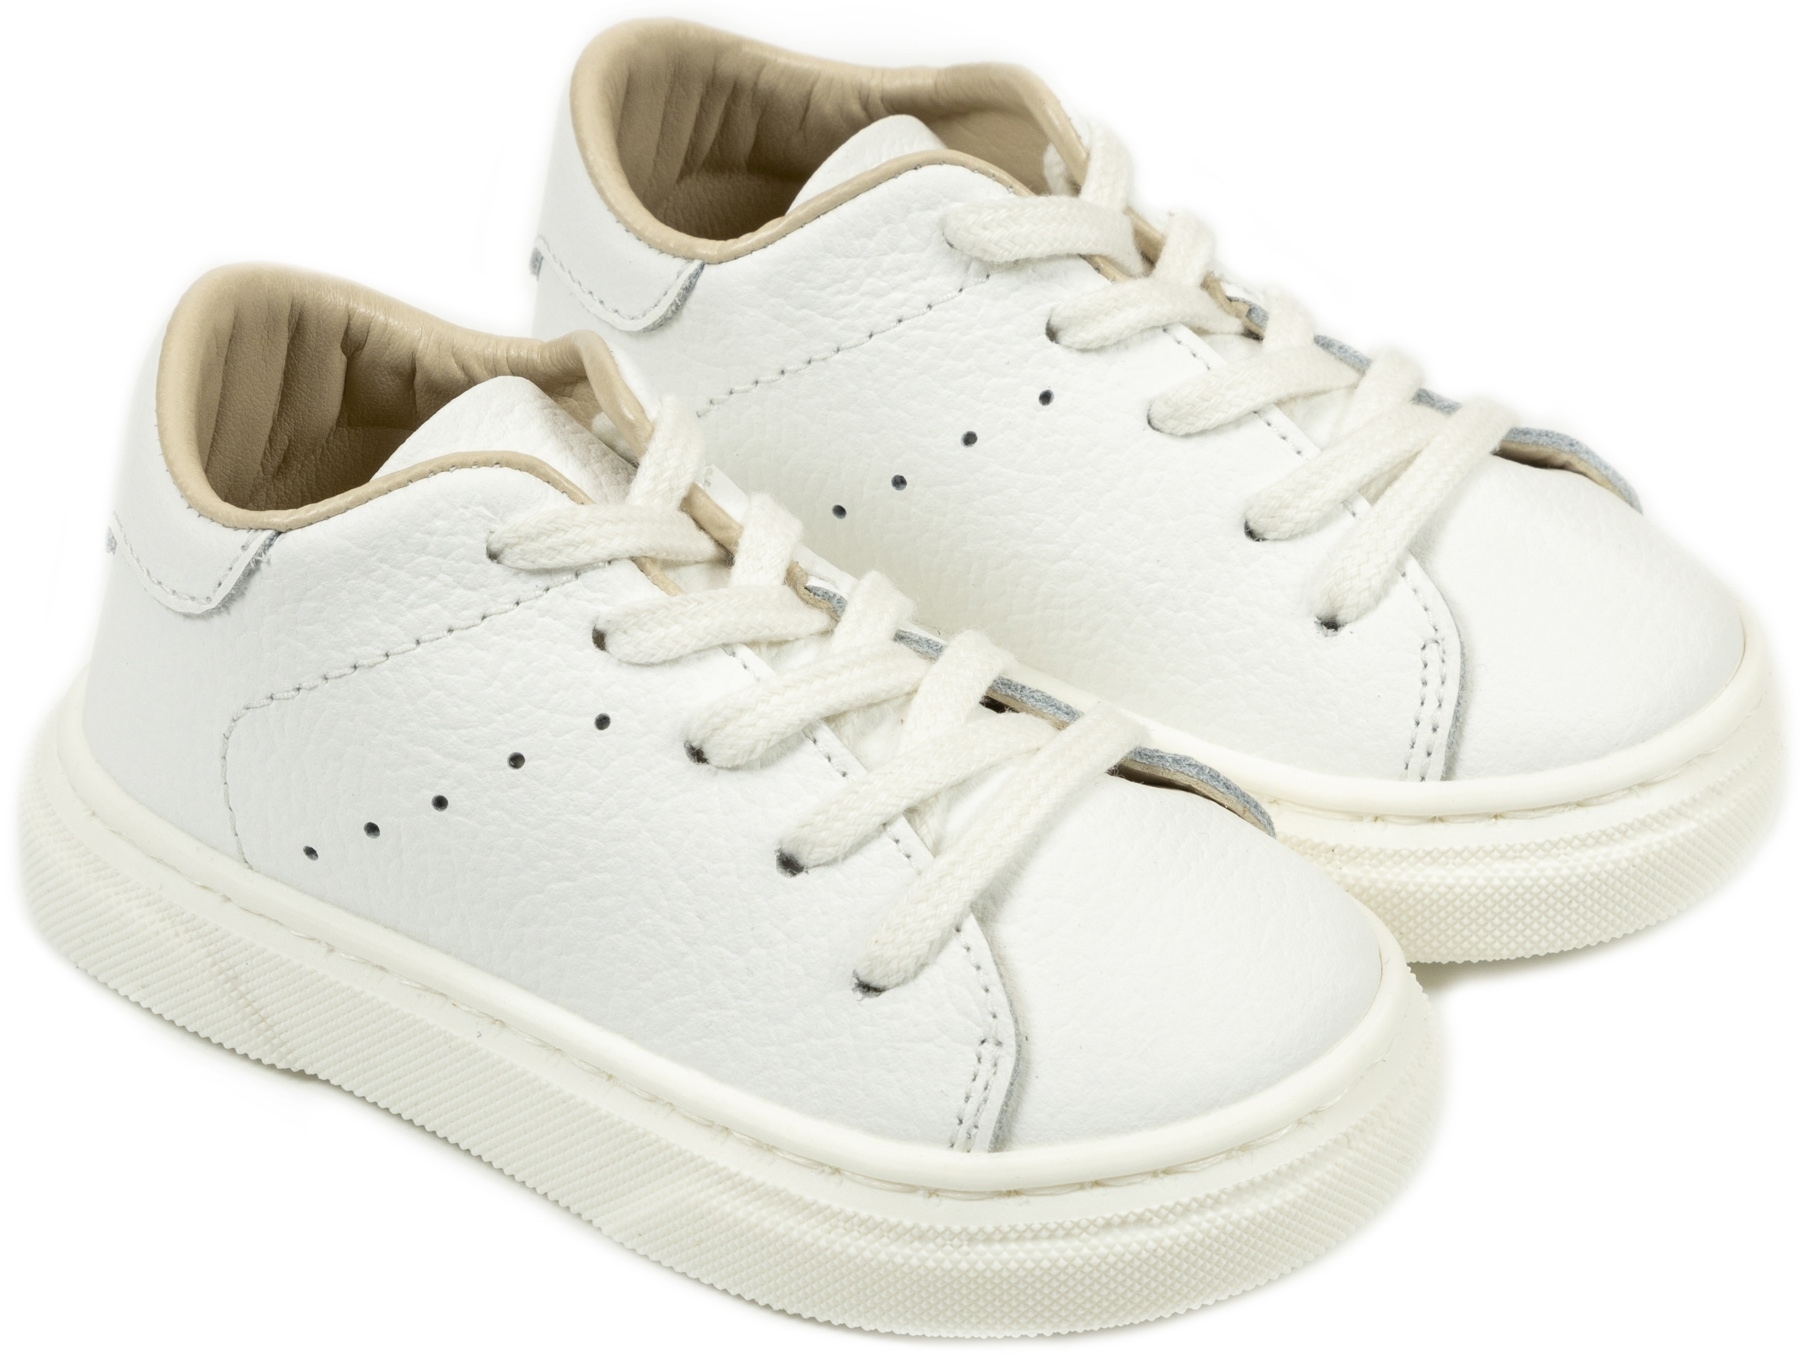 Babywalker Δετό Δερμάτινο Λευκό - Βαπτιστικά παπούτσια για αγόρι